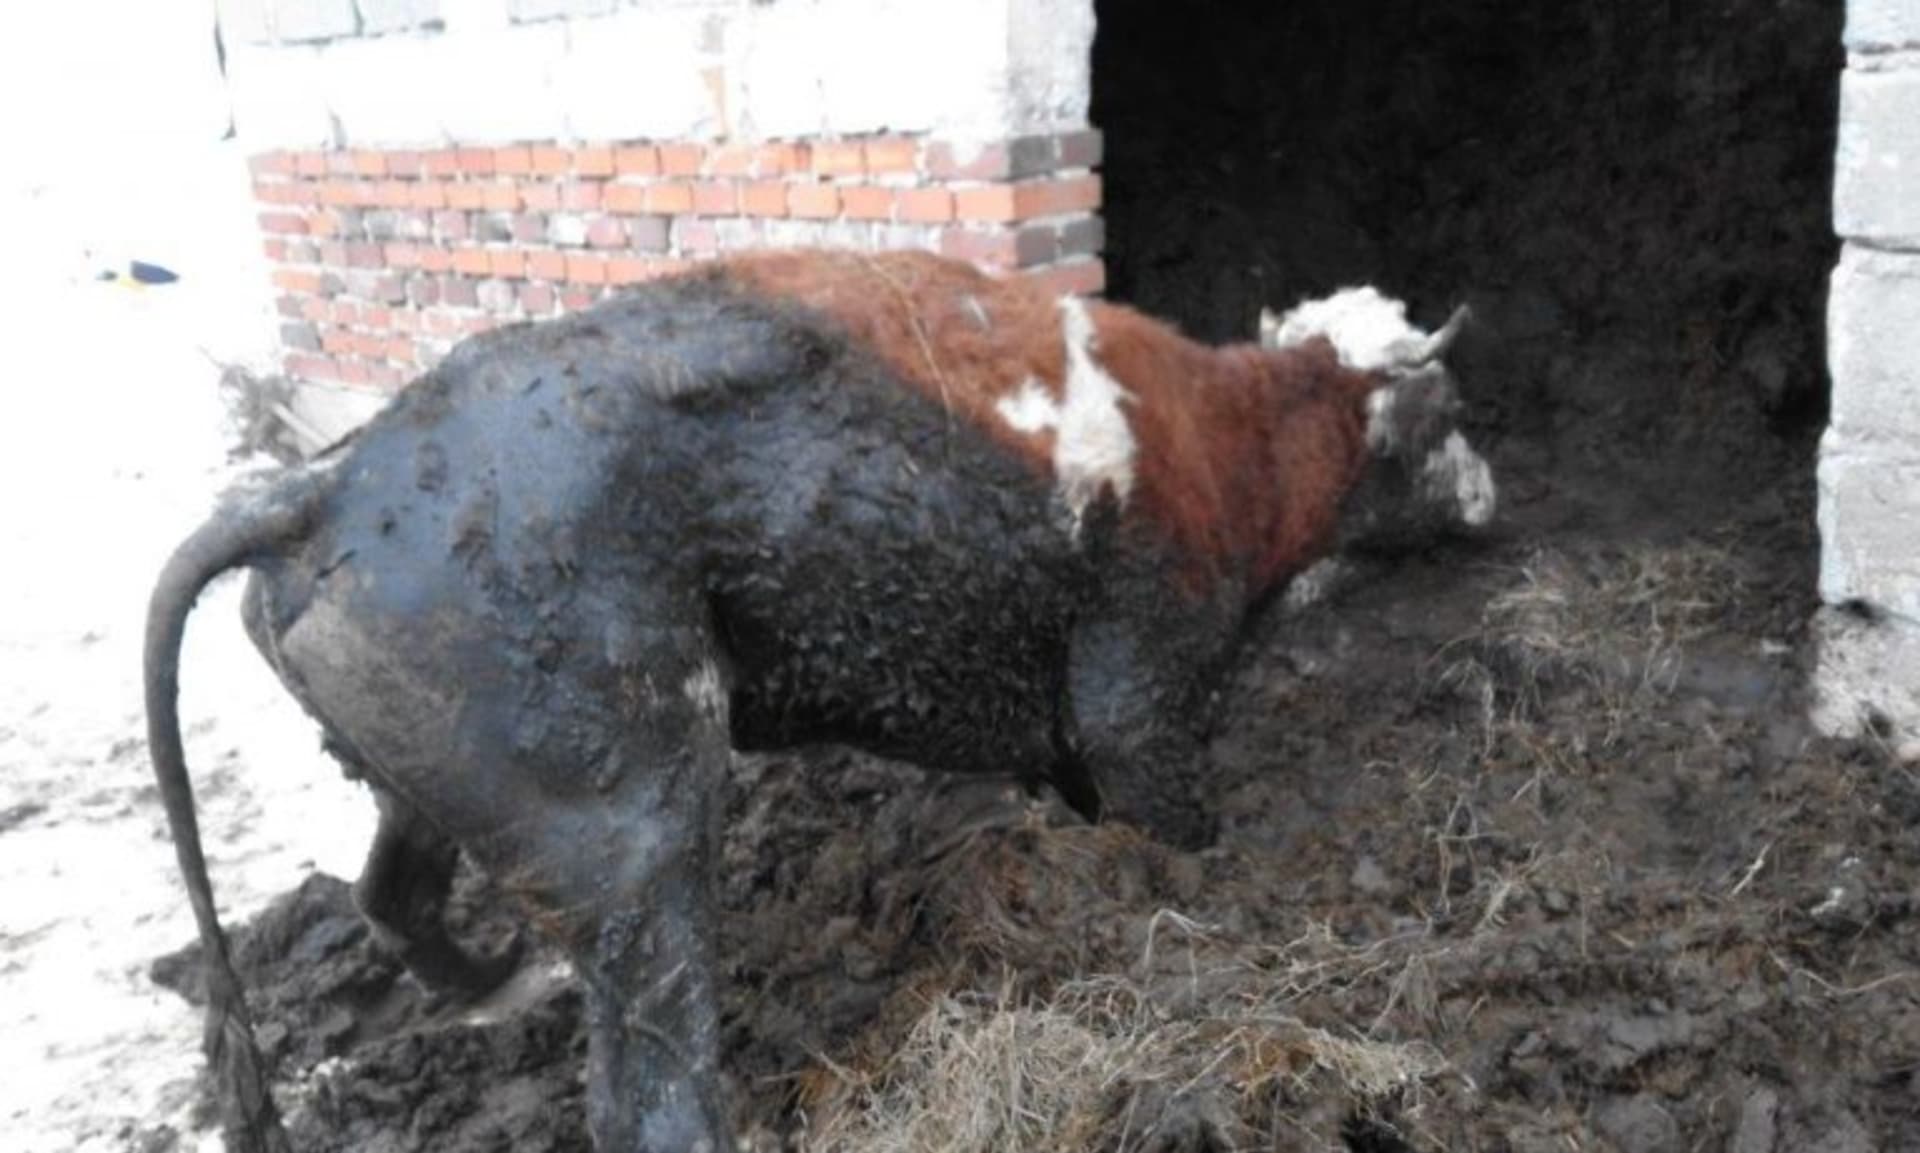 Otřesné týrání zvířat : V chovu byly podvyživené i mrtvé kusy